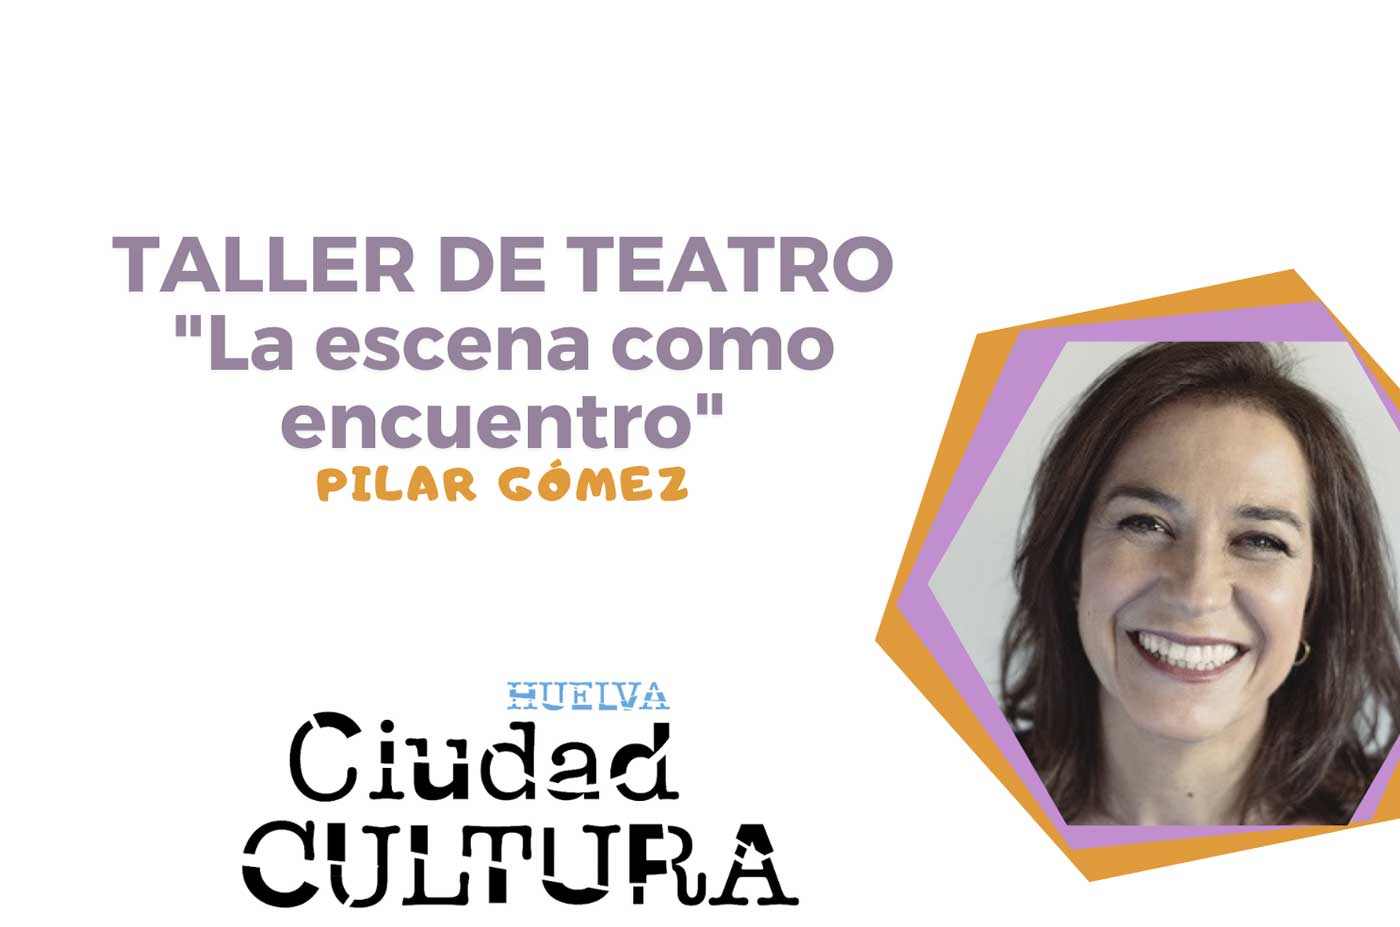 taller de teatro Casa Colon 4 5 y 6 de Febrero Huelva